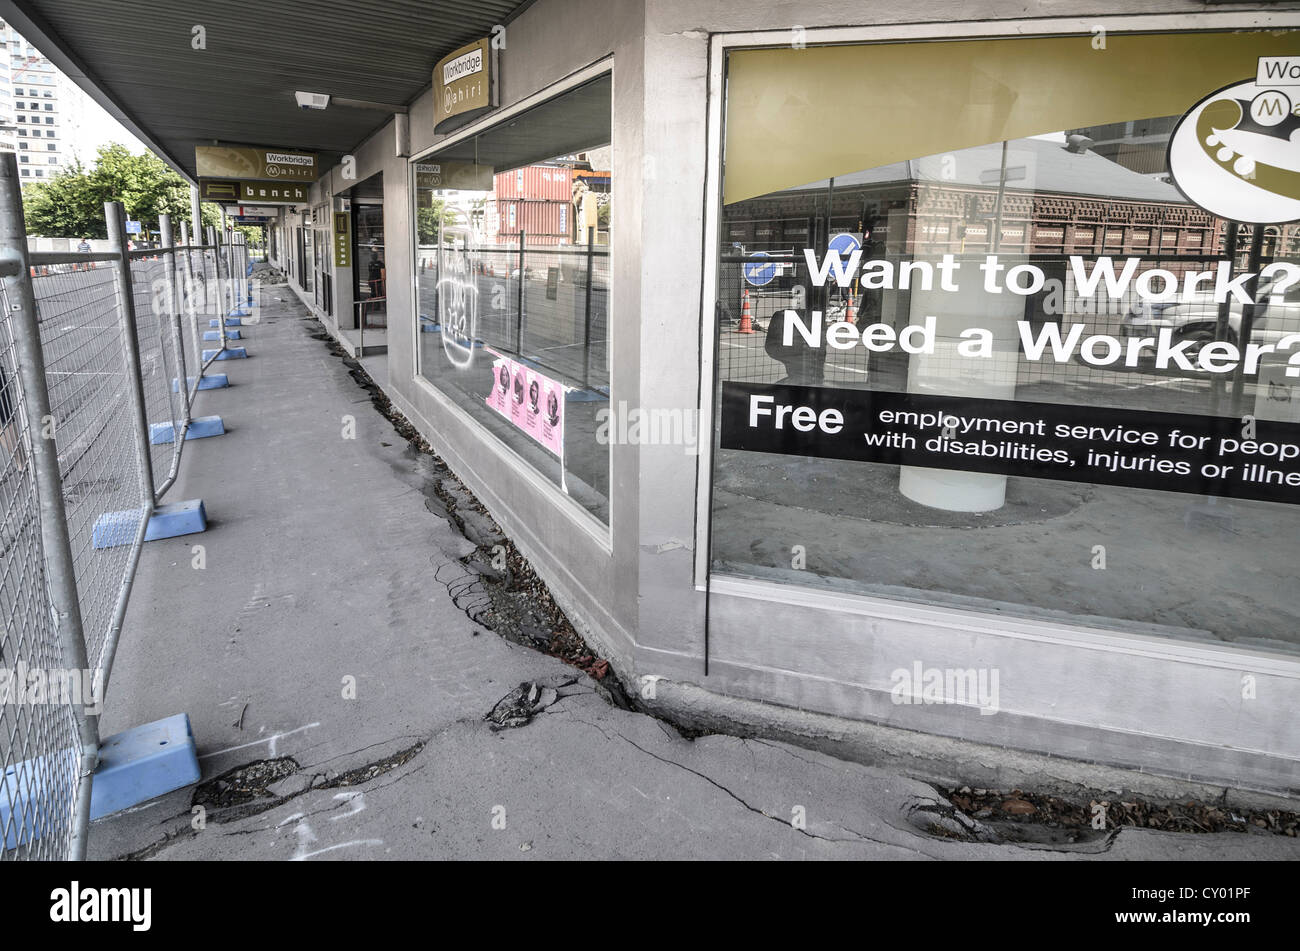 Bâtiment d'amortissement en raison de liquéfaction du sol, phénomène de liquéfaction, derrière des barrières, dégâts causés par le tremblement de terre, Christchurch Banque D'Images